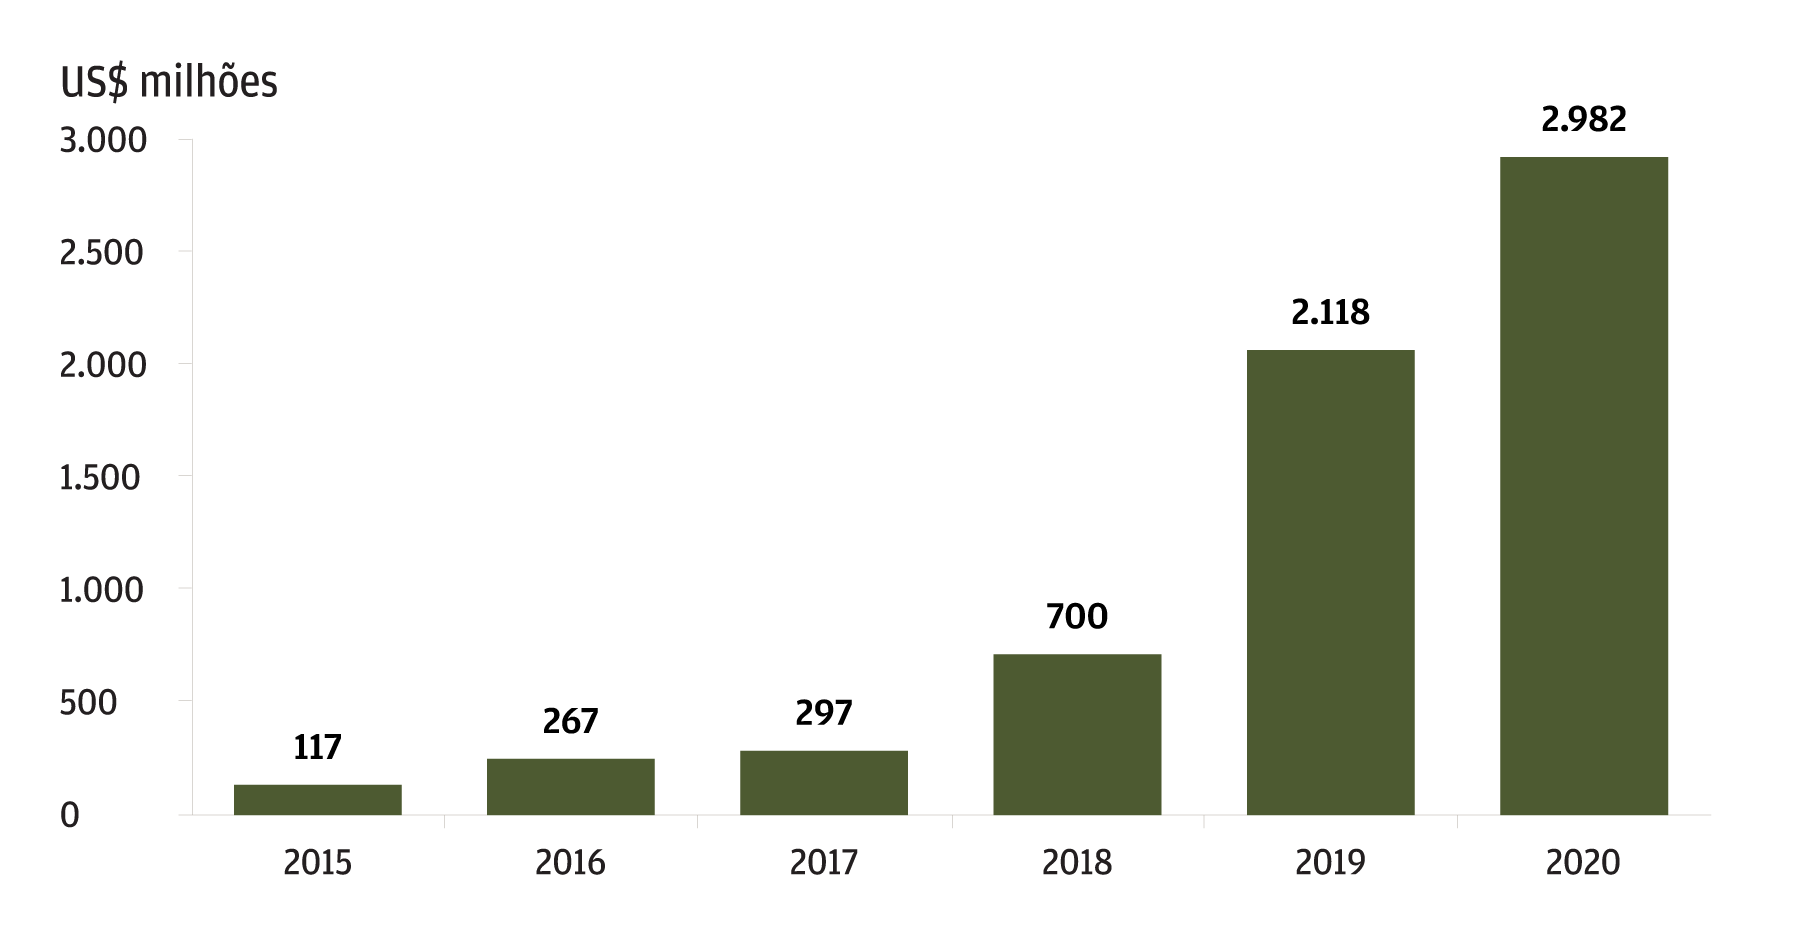 O gráfico de barras mostra o financiamento anual para empresas Fintech na América Latina para o período de 2015 a 2020, medido em milhões de dólares americanos. Em 2015, houve um financiamento total de 117 milhões de dólares e em 2020, o valor foi de 2.982 milhões de dólares. Portanto, o investimento em Fintech na região se multiplicou em cerca de 25x desde 2015.